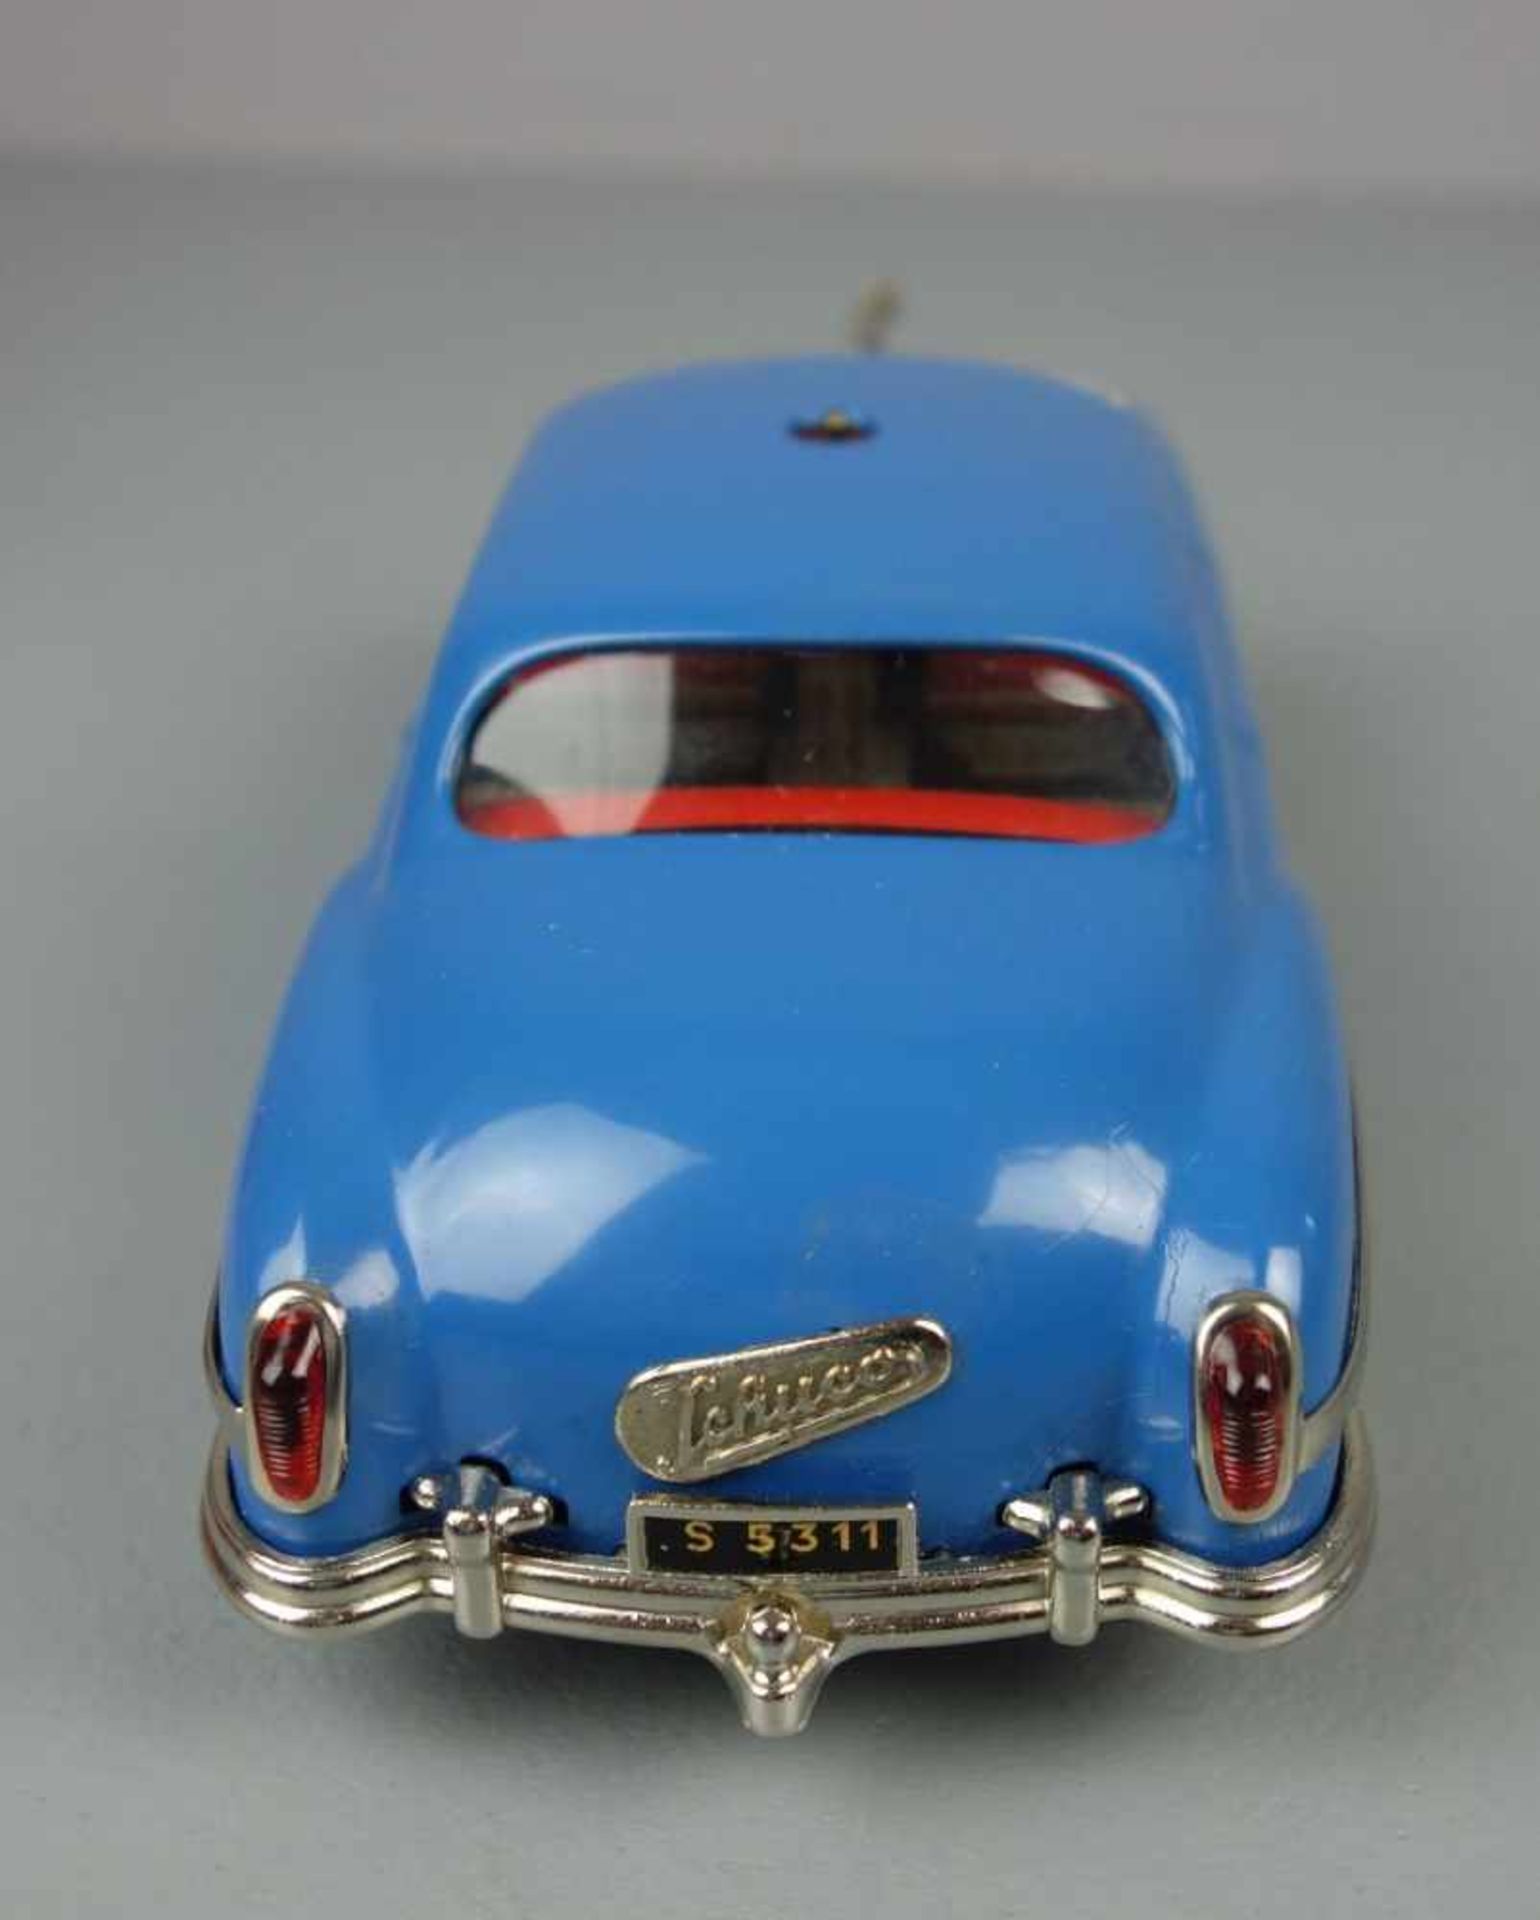 SCHUCO BLECHSPIELZEUG / FAHRZEUG : Auto Ingenico 5311 mit Zubehör / tin toy car, Manufaktur Schuco - - Bild 10 aus 11